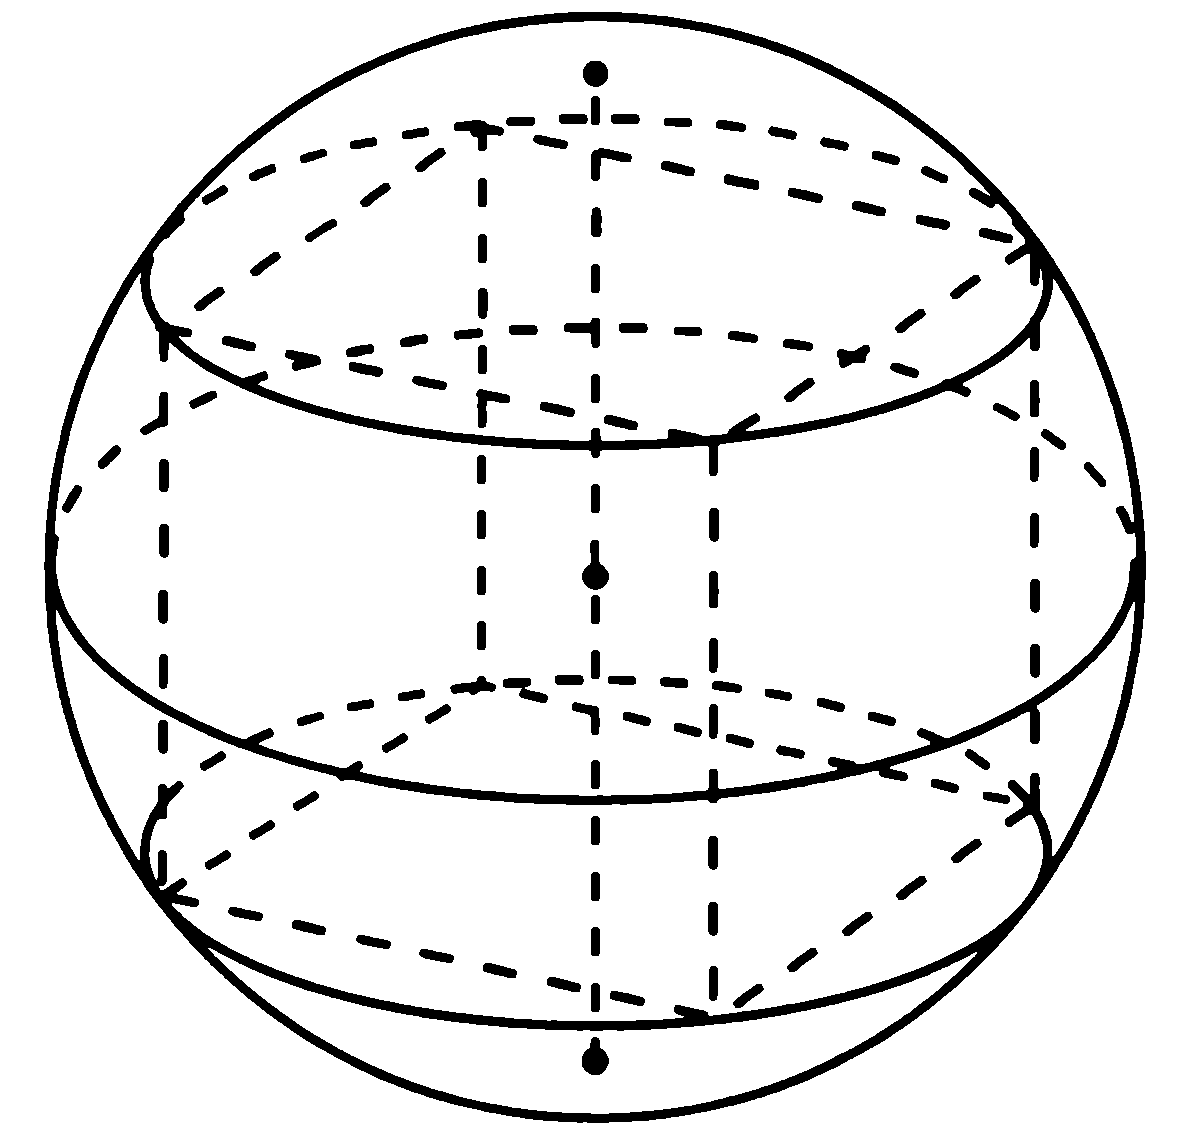 Радиус описанного вокруг куба шара. Сфера описанная вокруг Куба. Радиус описанной вокруг Куба сферы. Шар описанный около Куба. Четырехугольная Призма вписанная в шар.